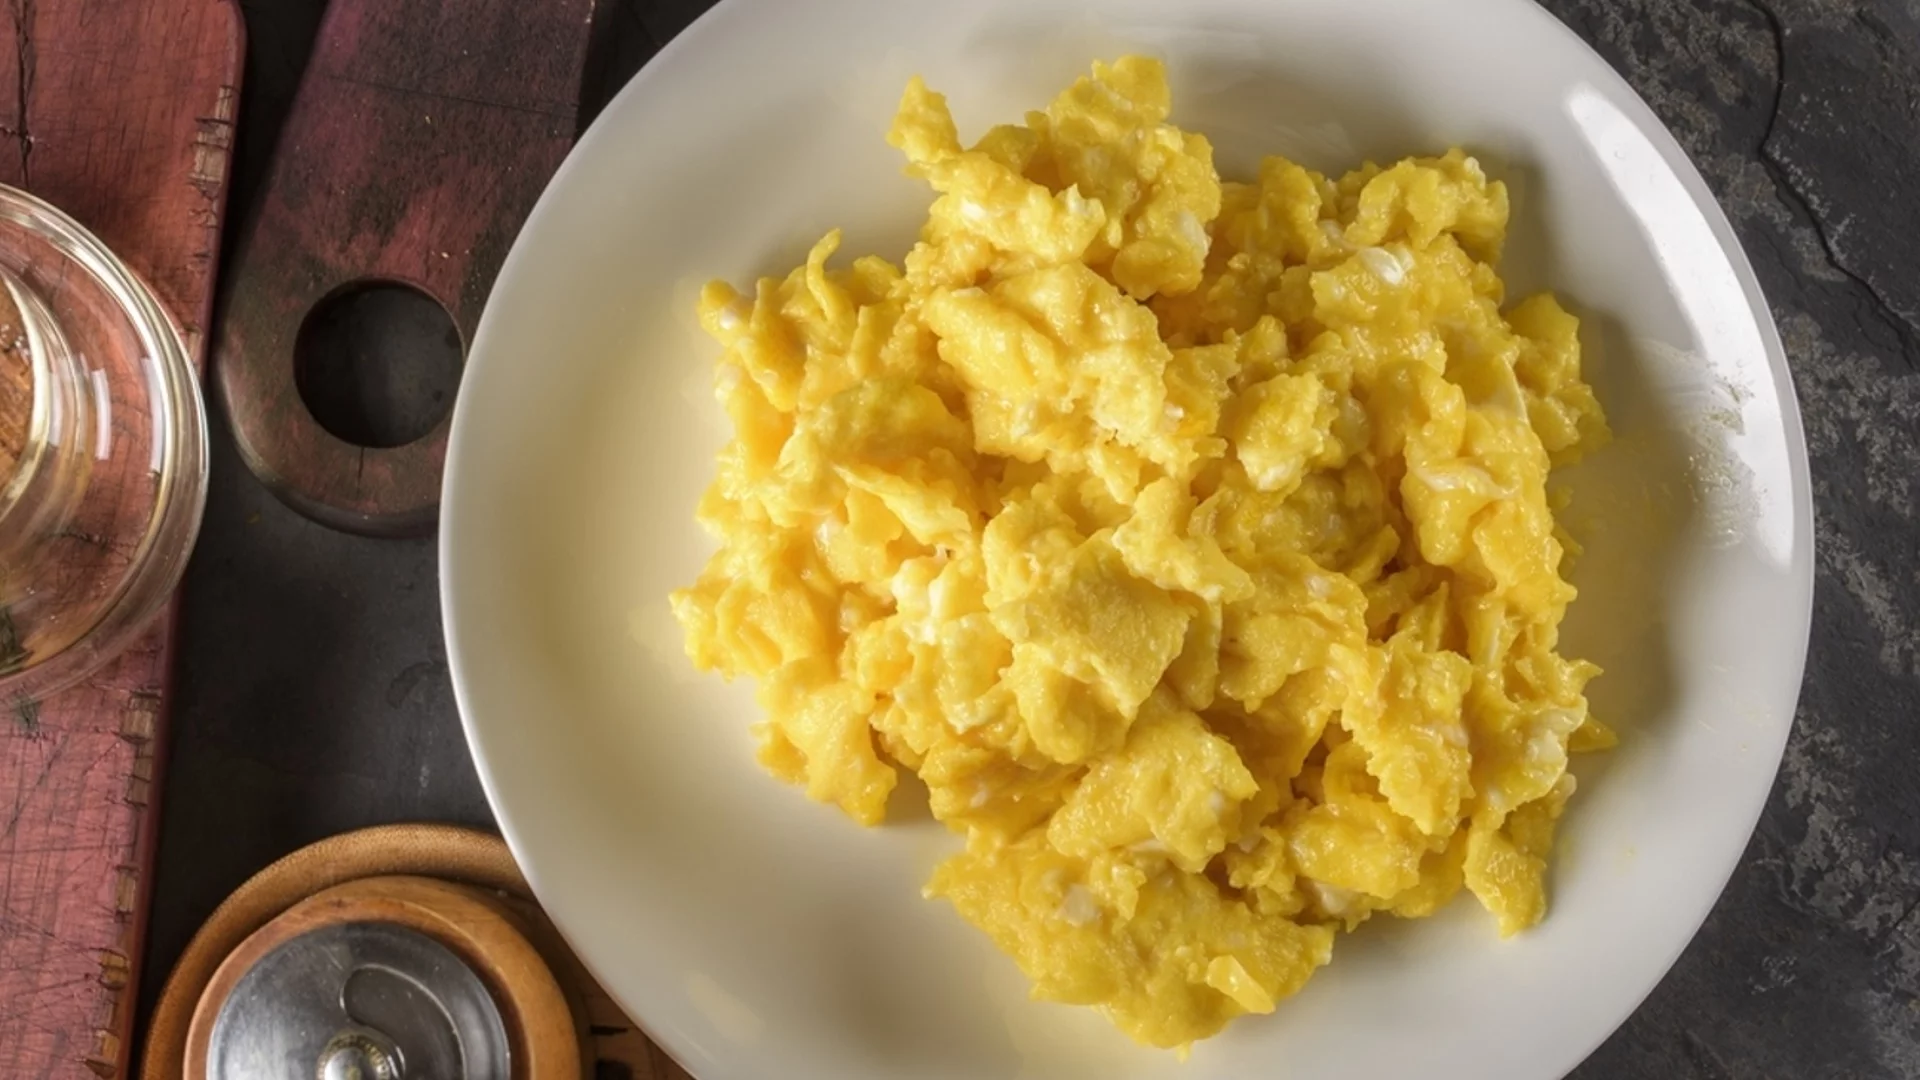 Кога е по-полезно да се ядат яйца: за закуска или за вечеря?